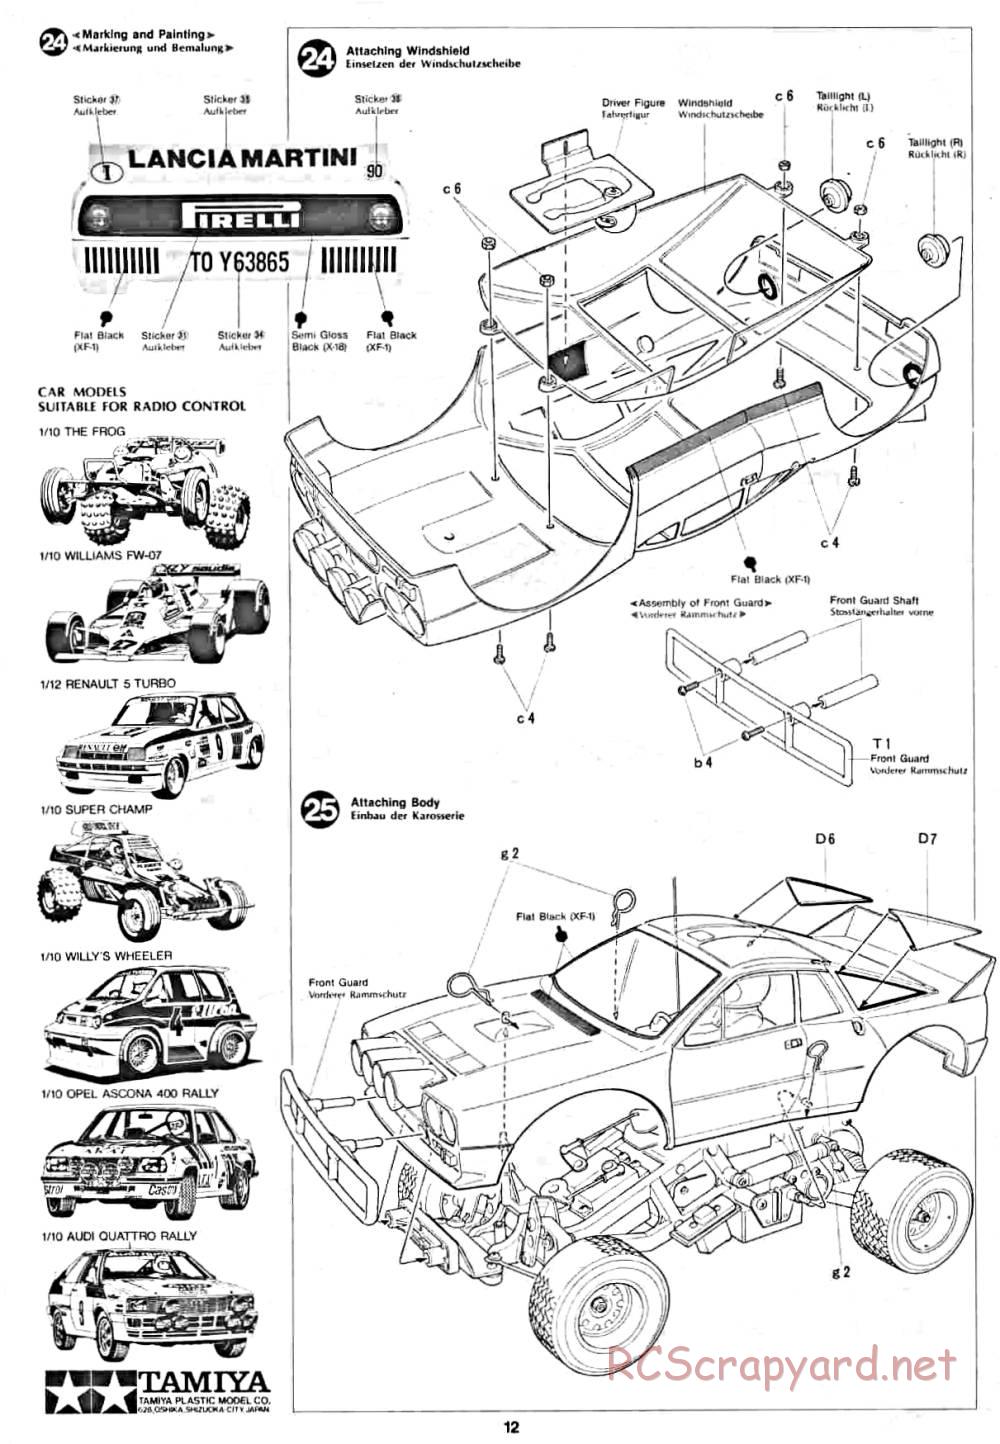 Tamiya - Lancia Rally - 58040 - Manual - Page 12